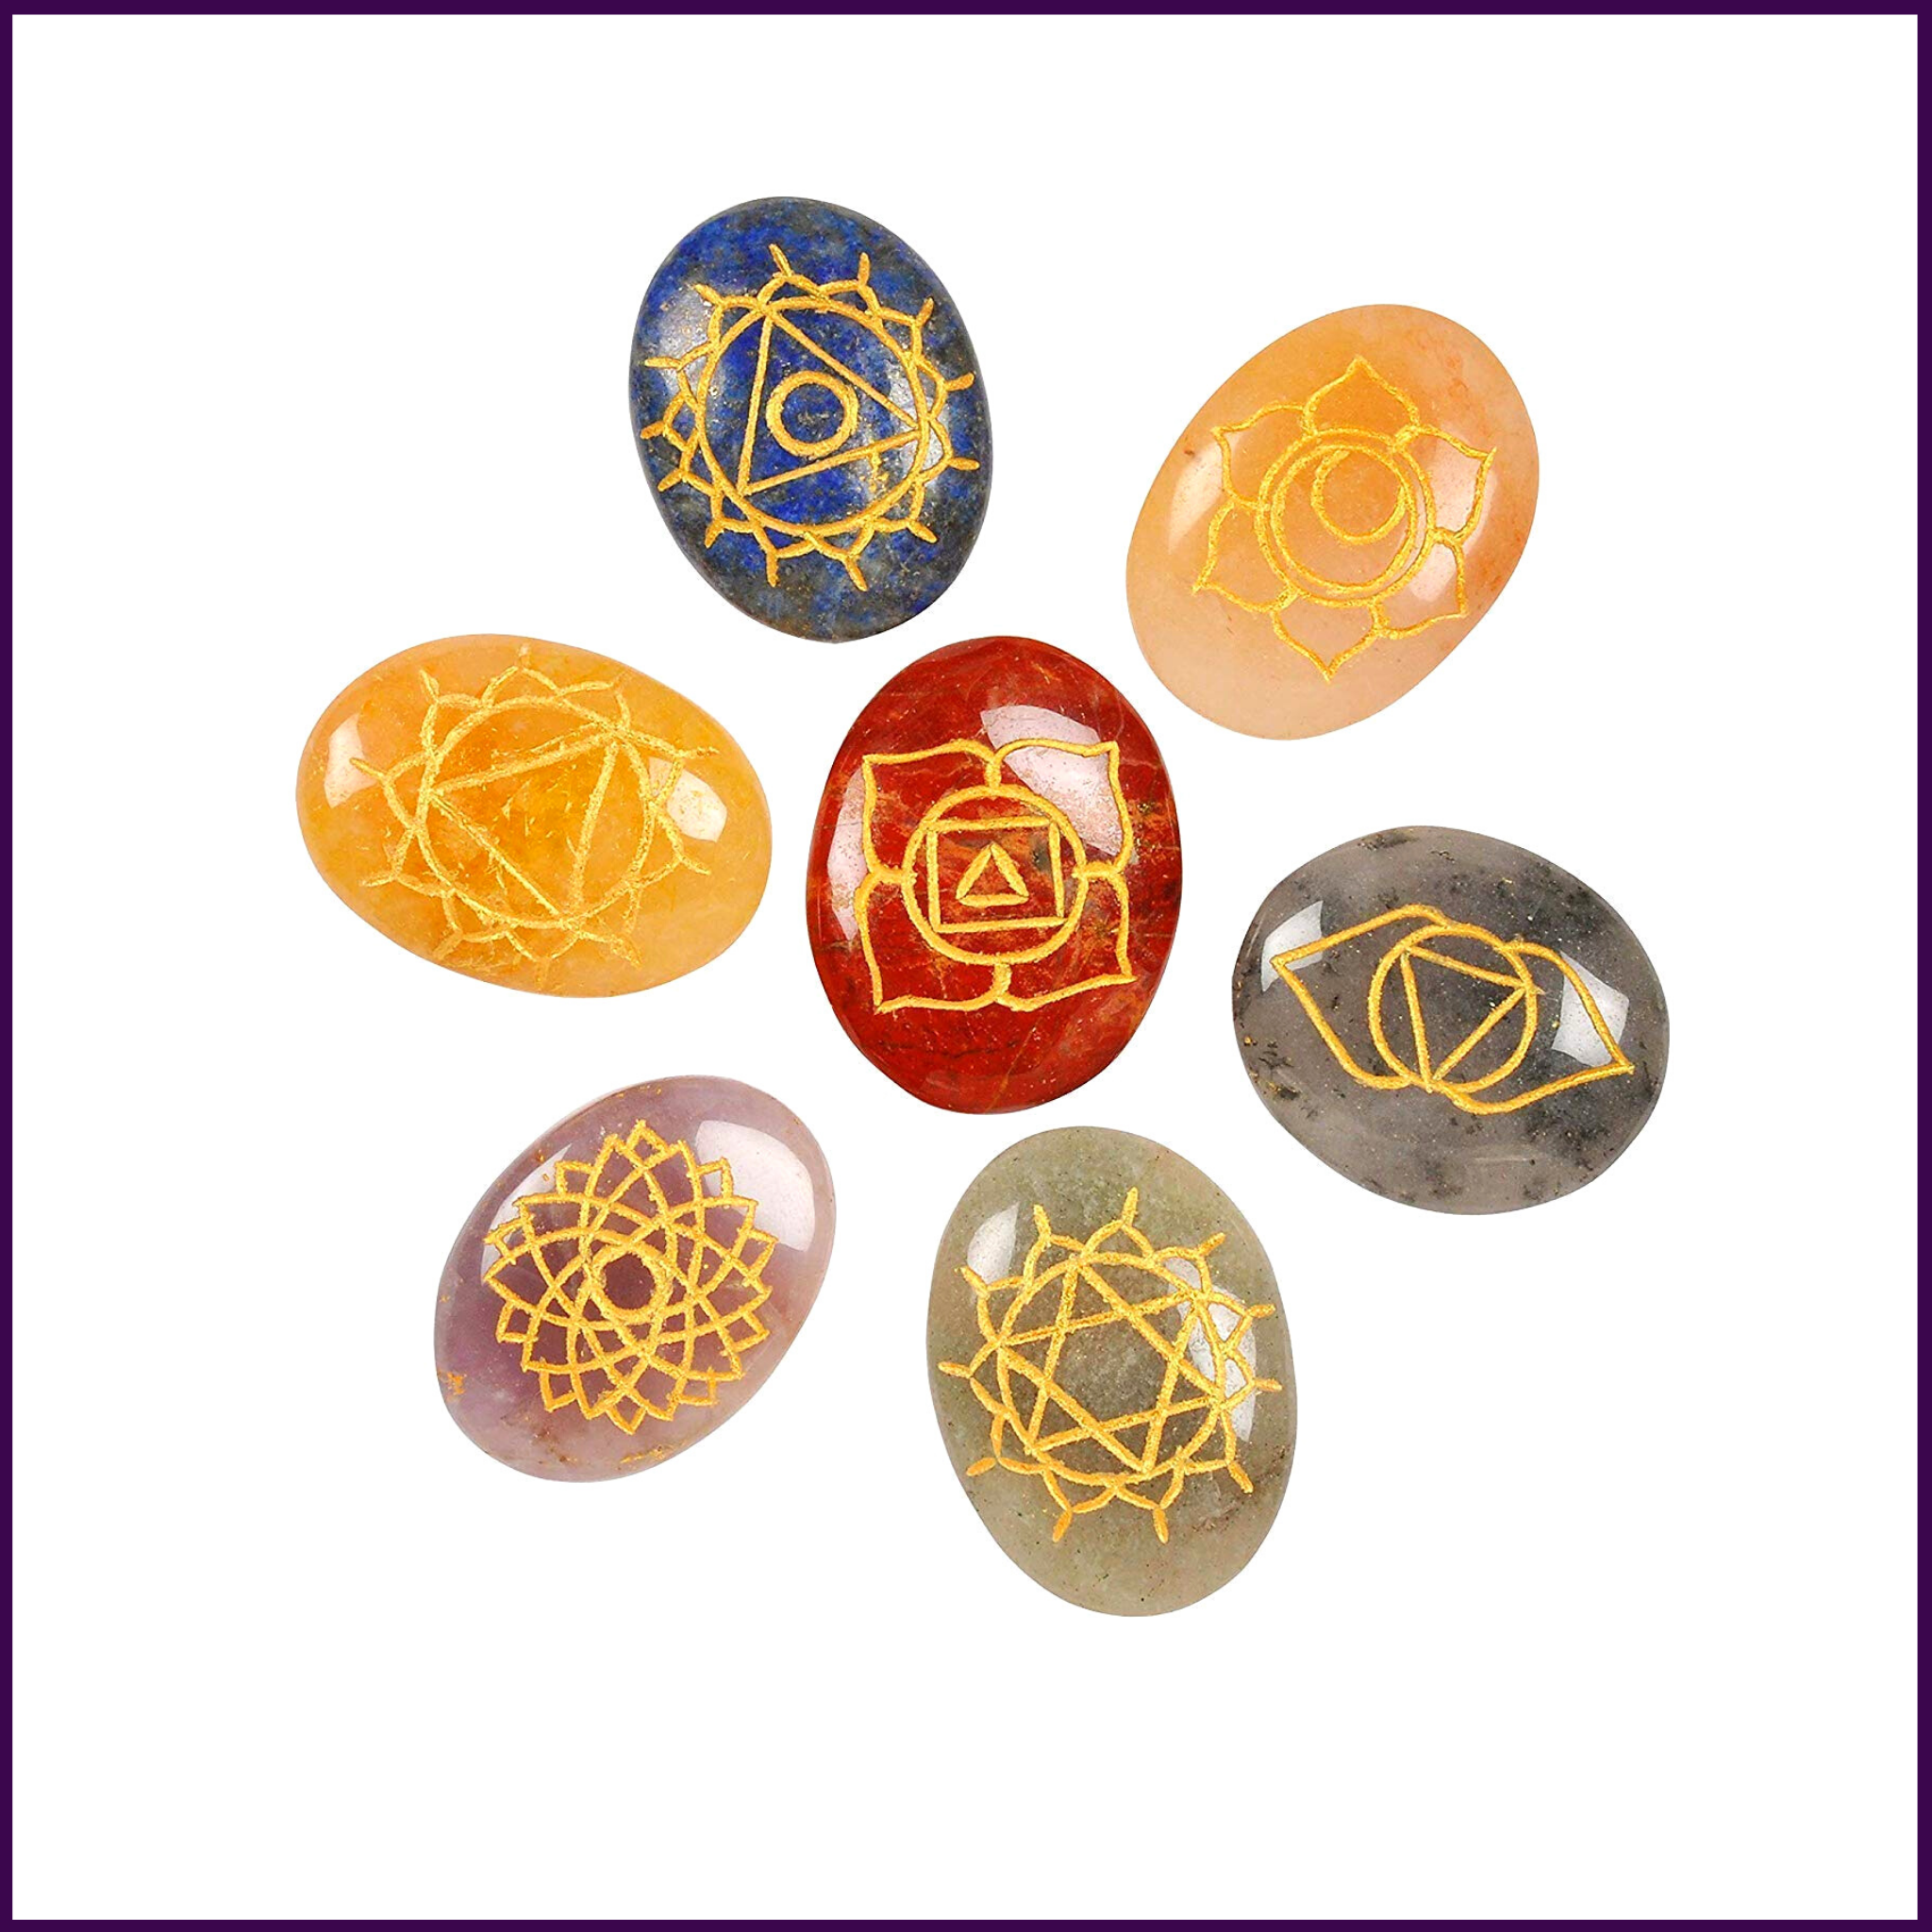 7 Chakra Engraved Natural Stones Set For Crystal Healing & Meditation - 51pyramids